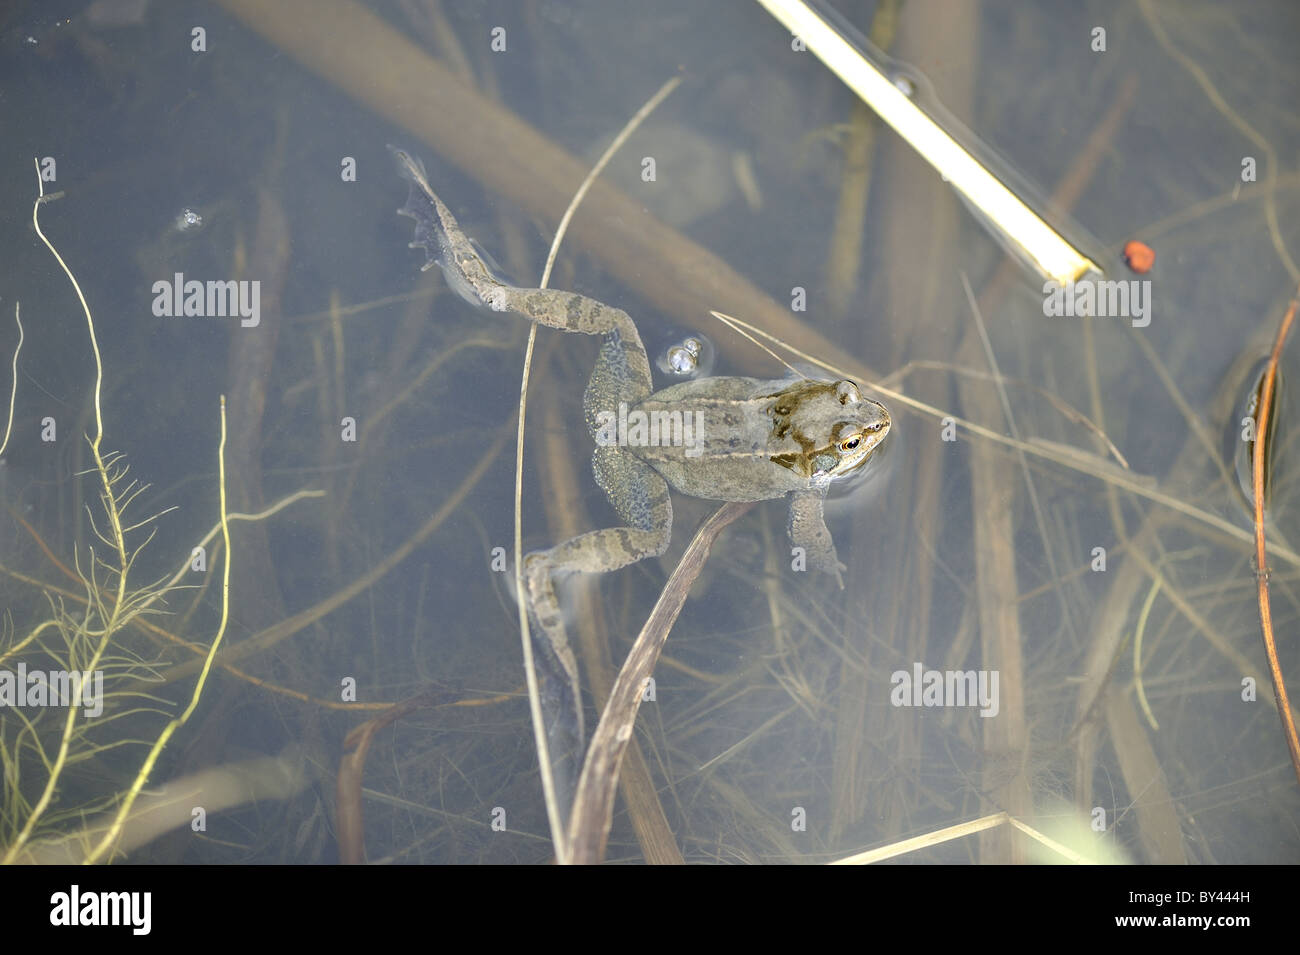 Rana comune (Rana temporaria) maschio femmina in attesa in corrispondenza della superficie dell'acqua Foto Stock